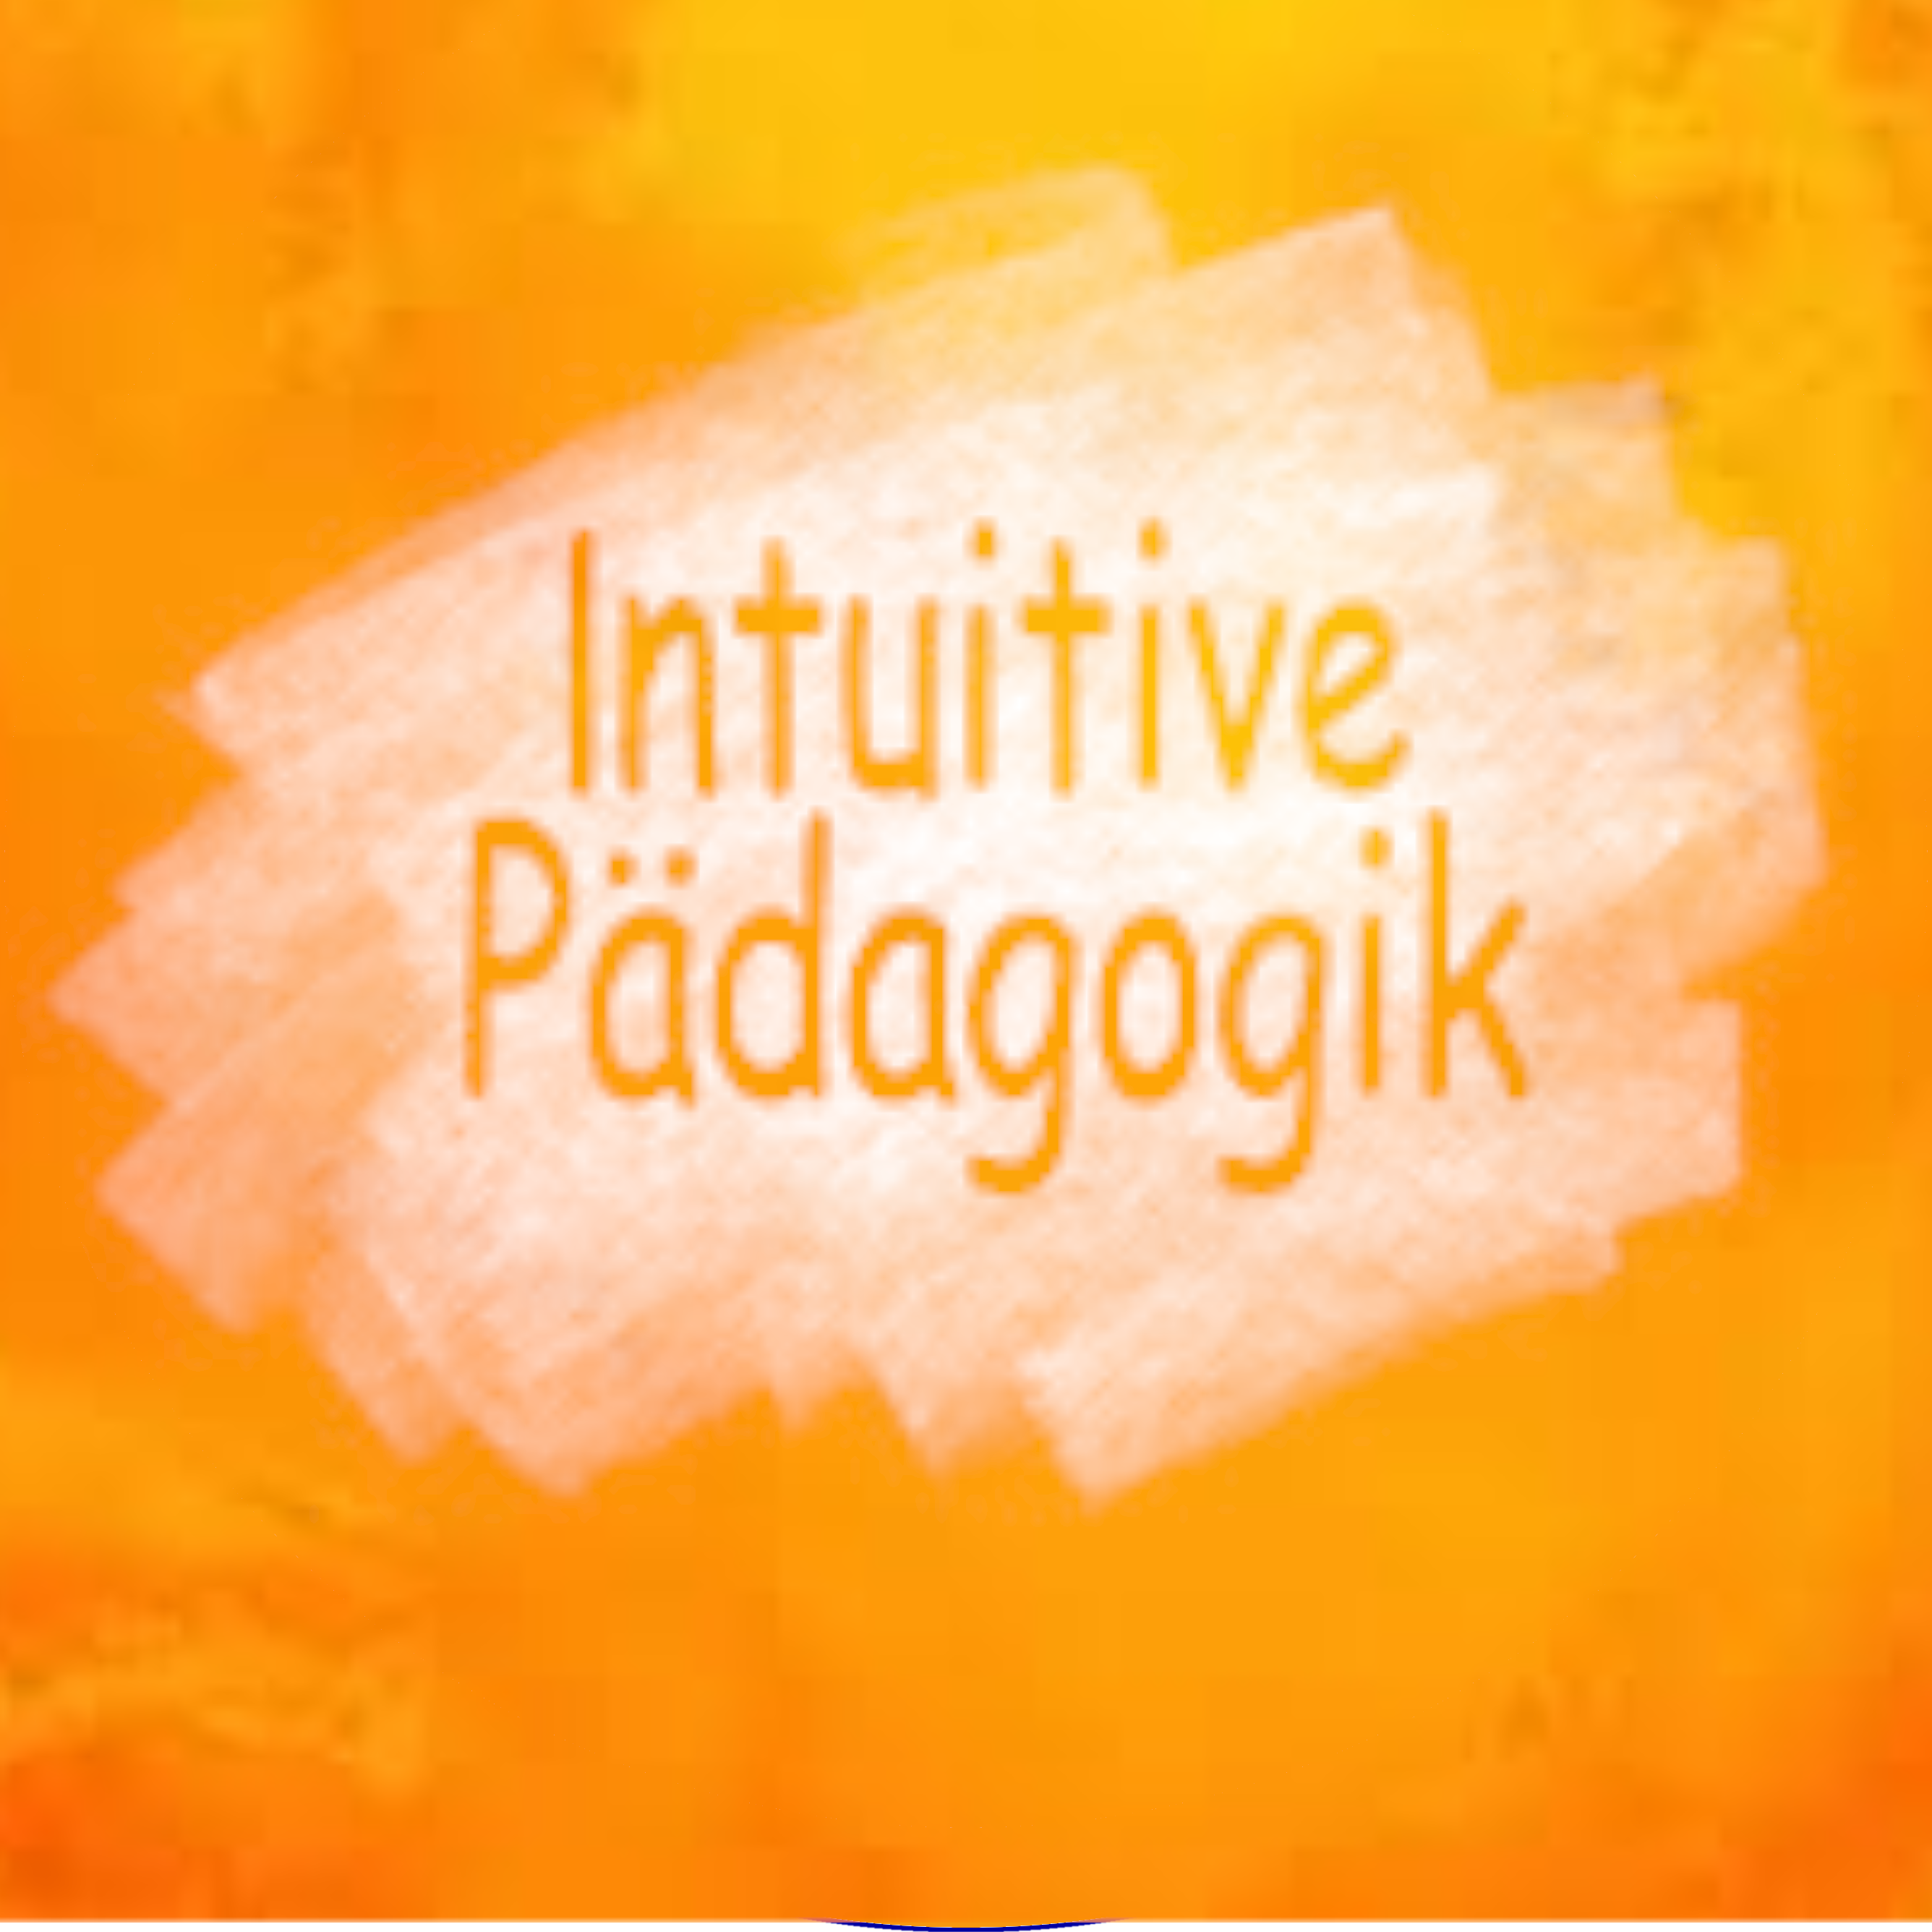 Intuitive Pädagogik